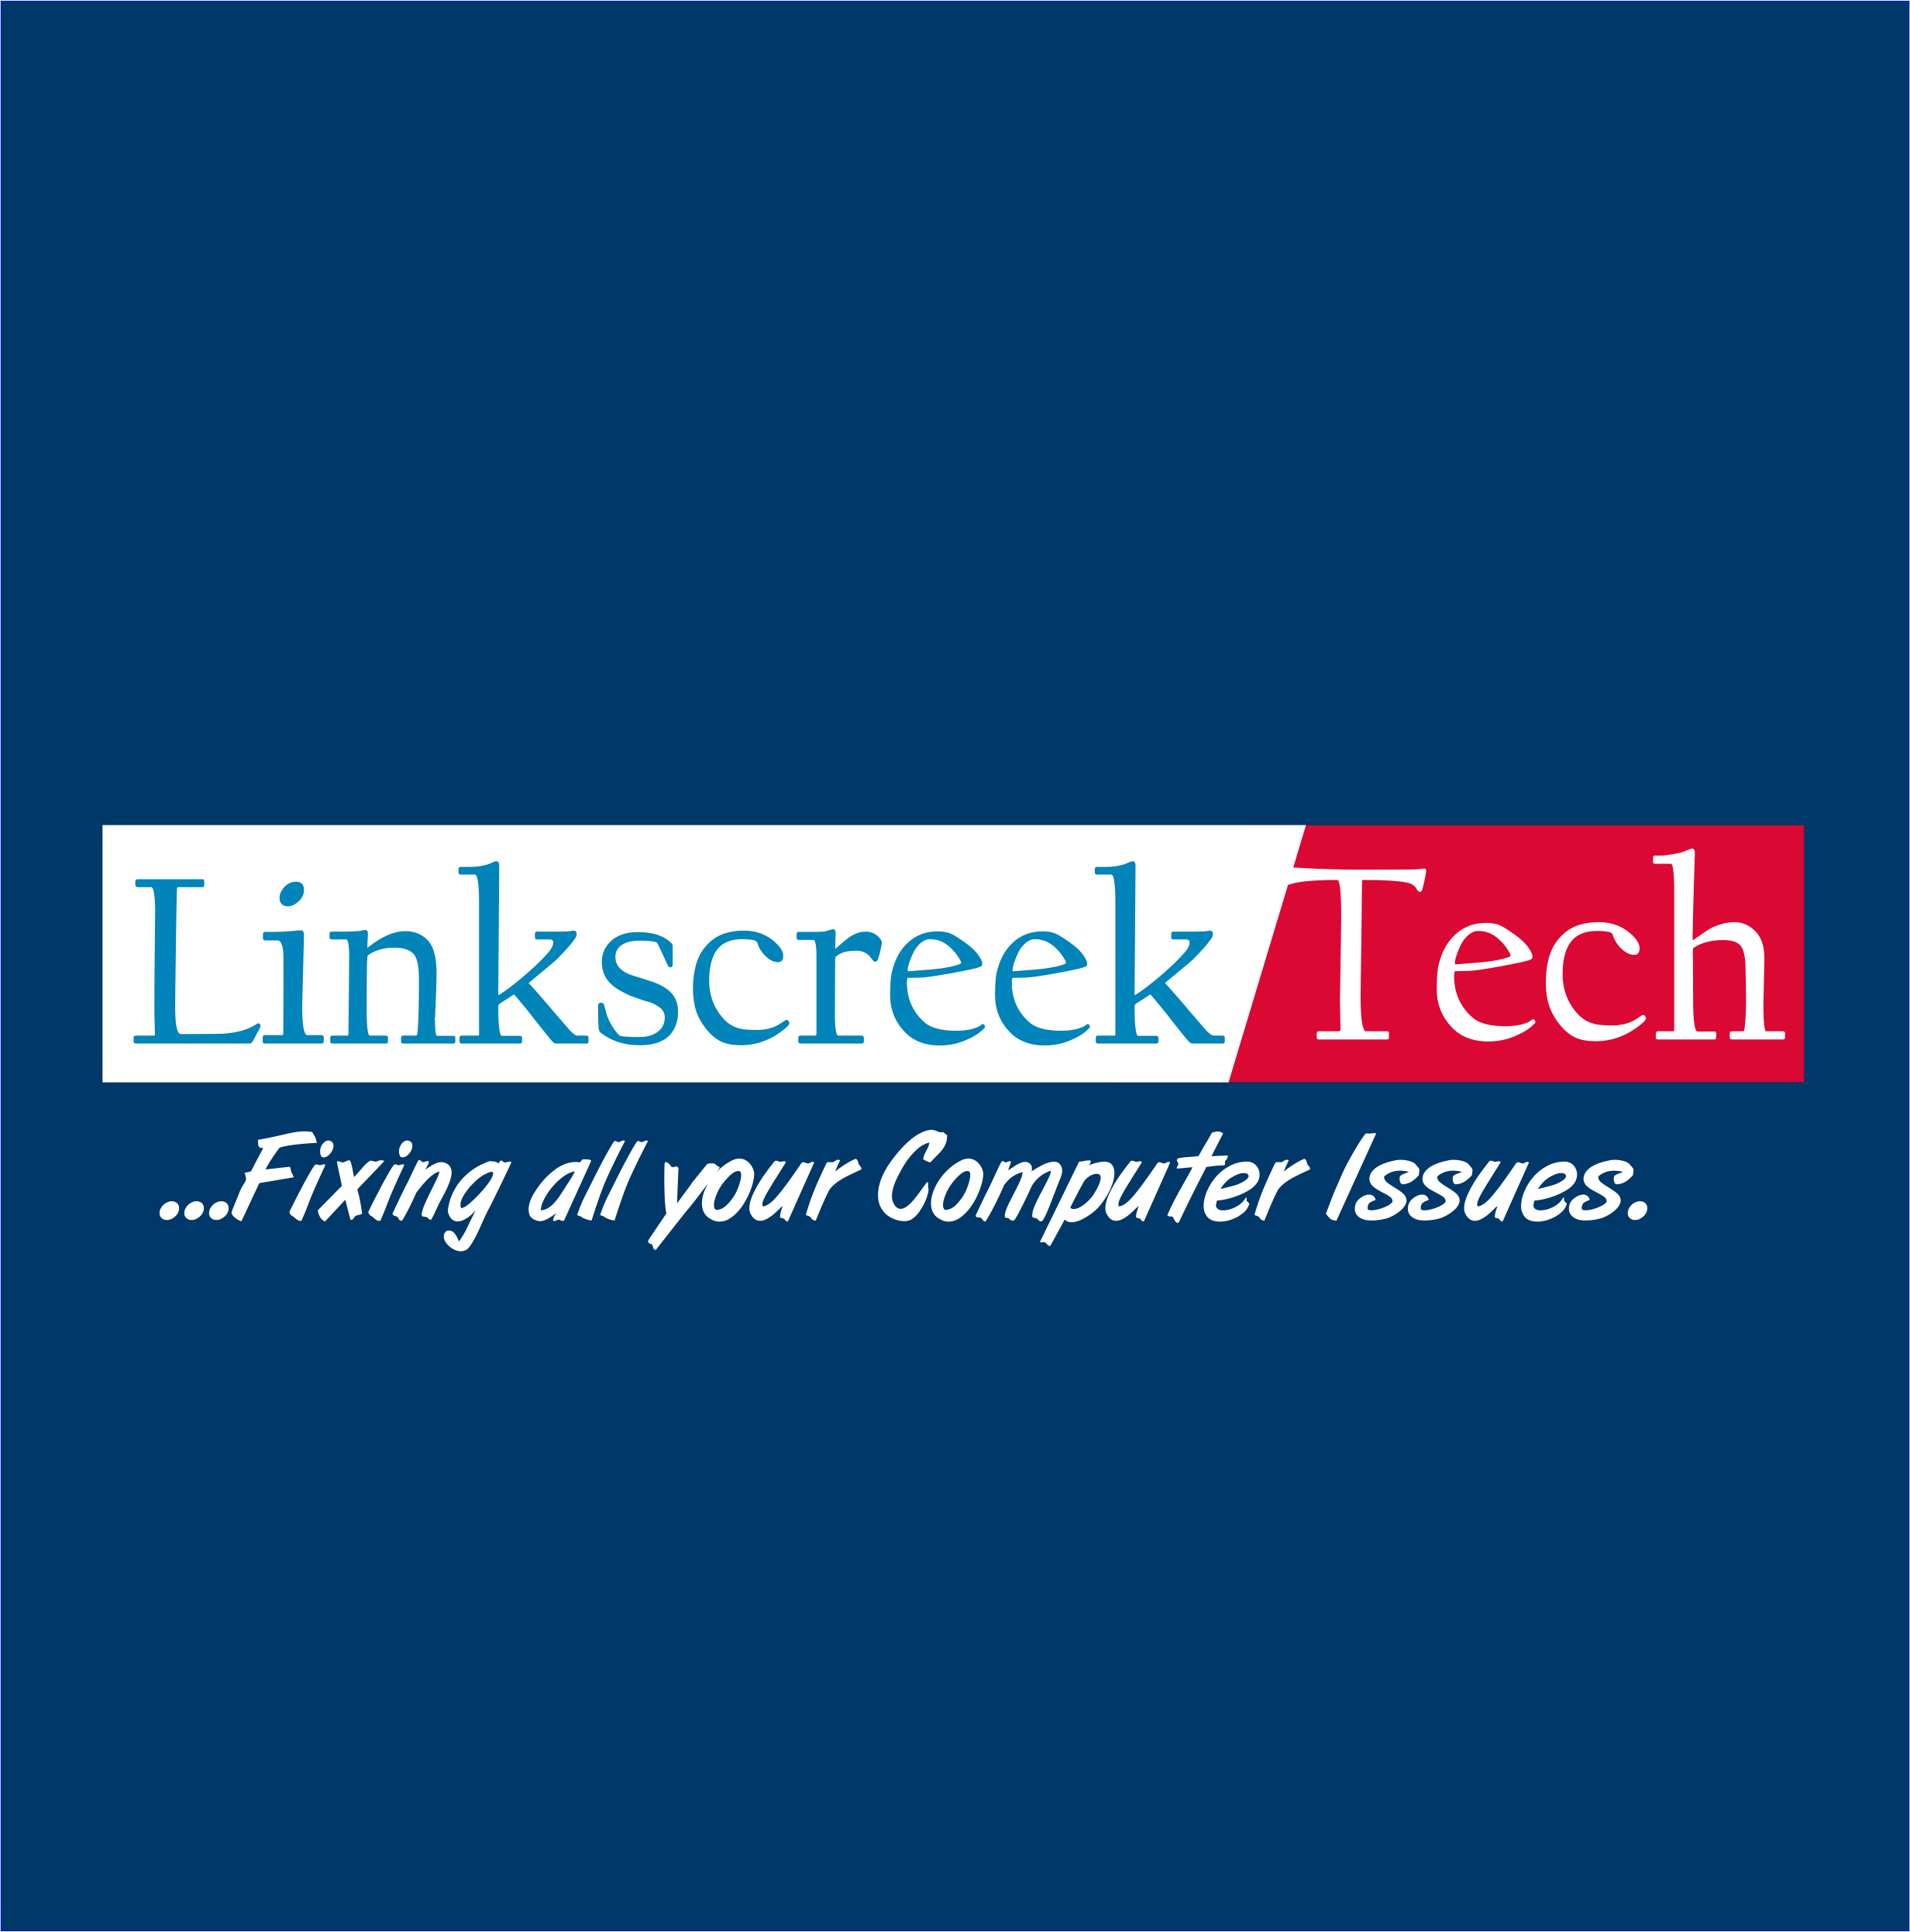 Linkscreet Tech provider